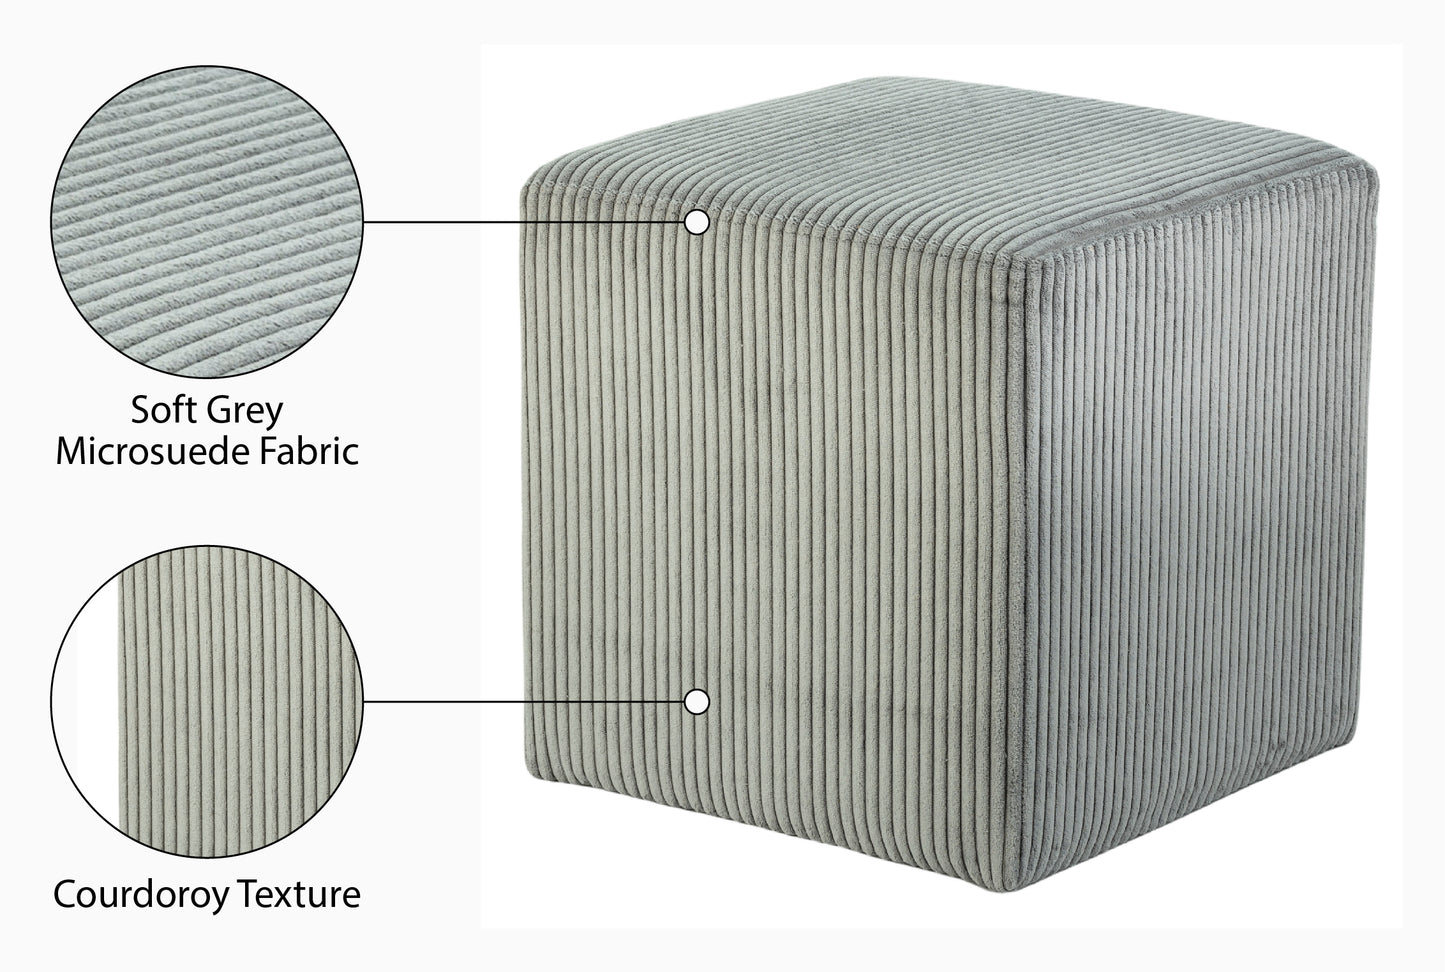 serafina grey microsuede fabric ottoman/stool grey